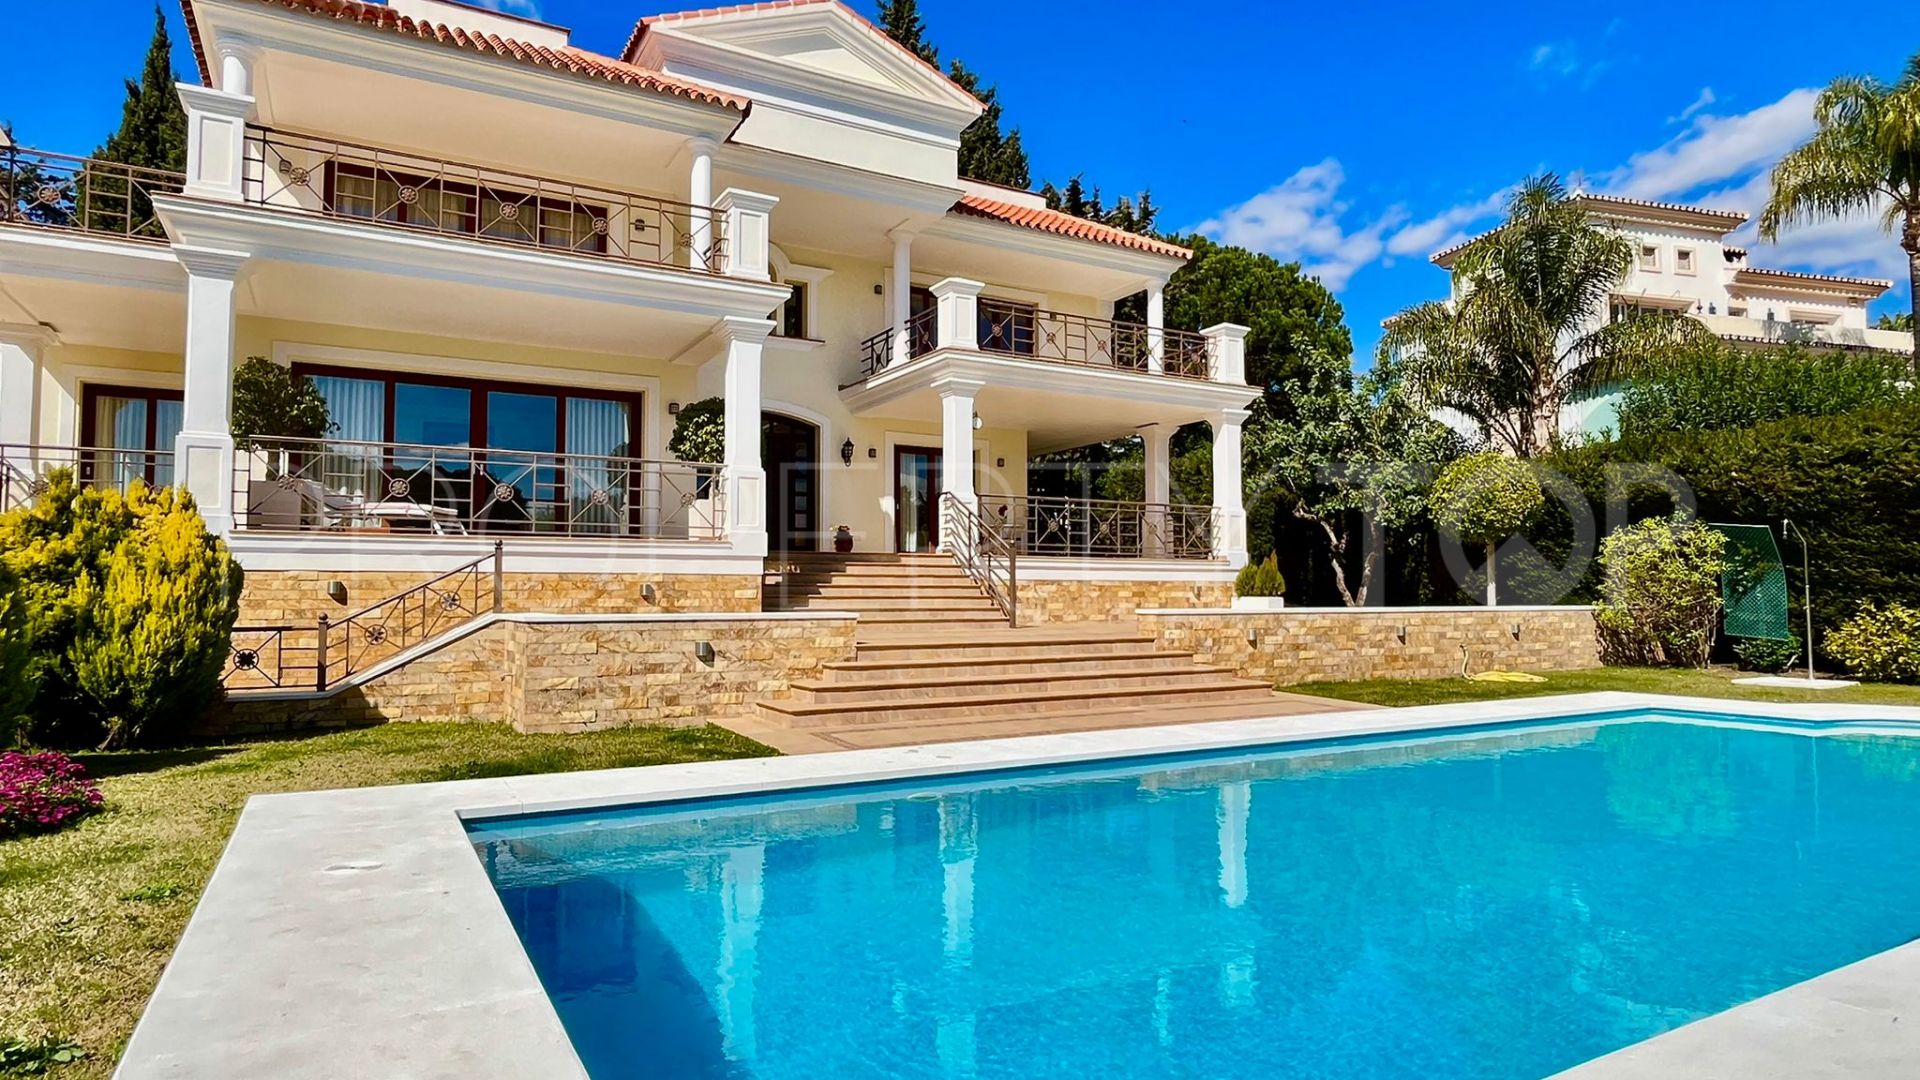 6 bedrooms villa in Las Chapas for sale